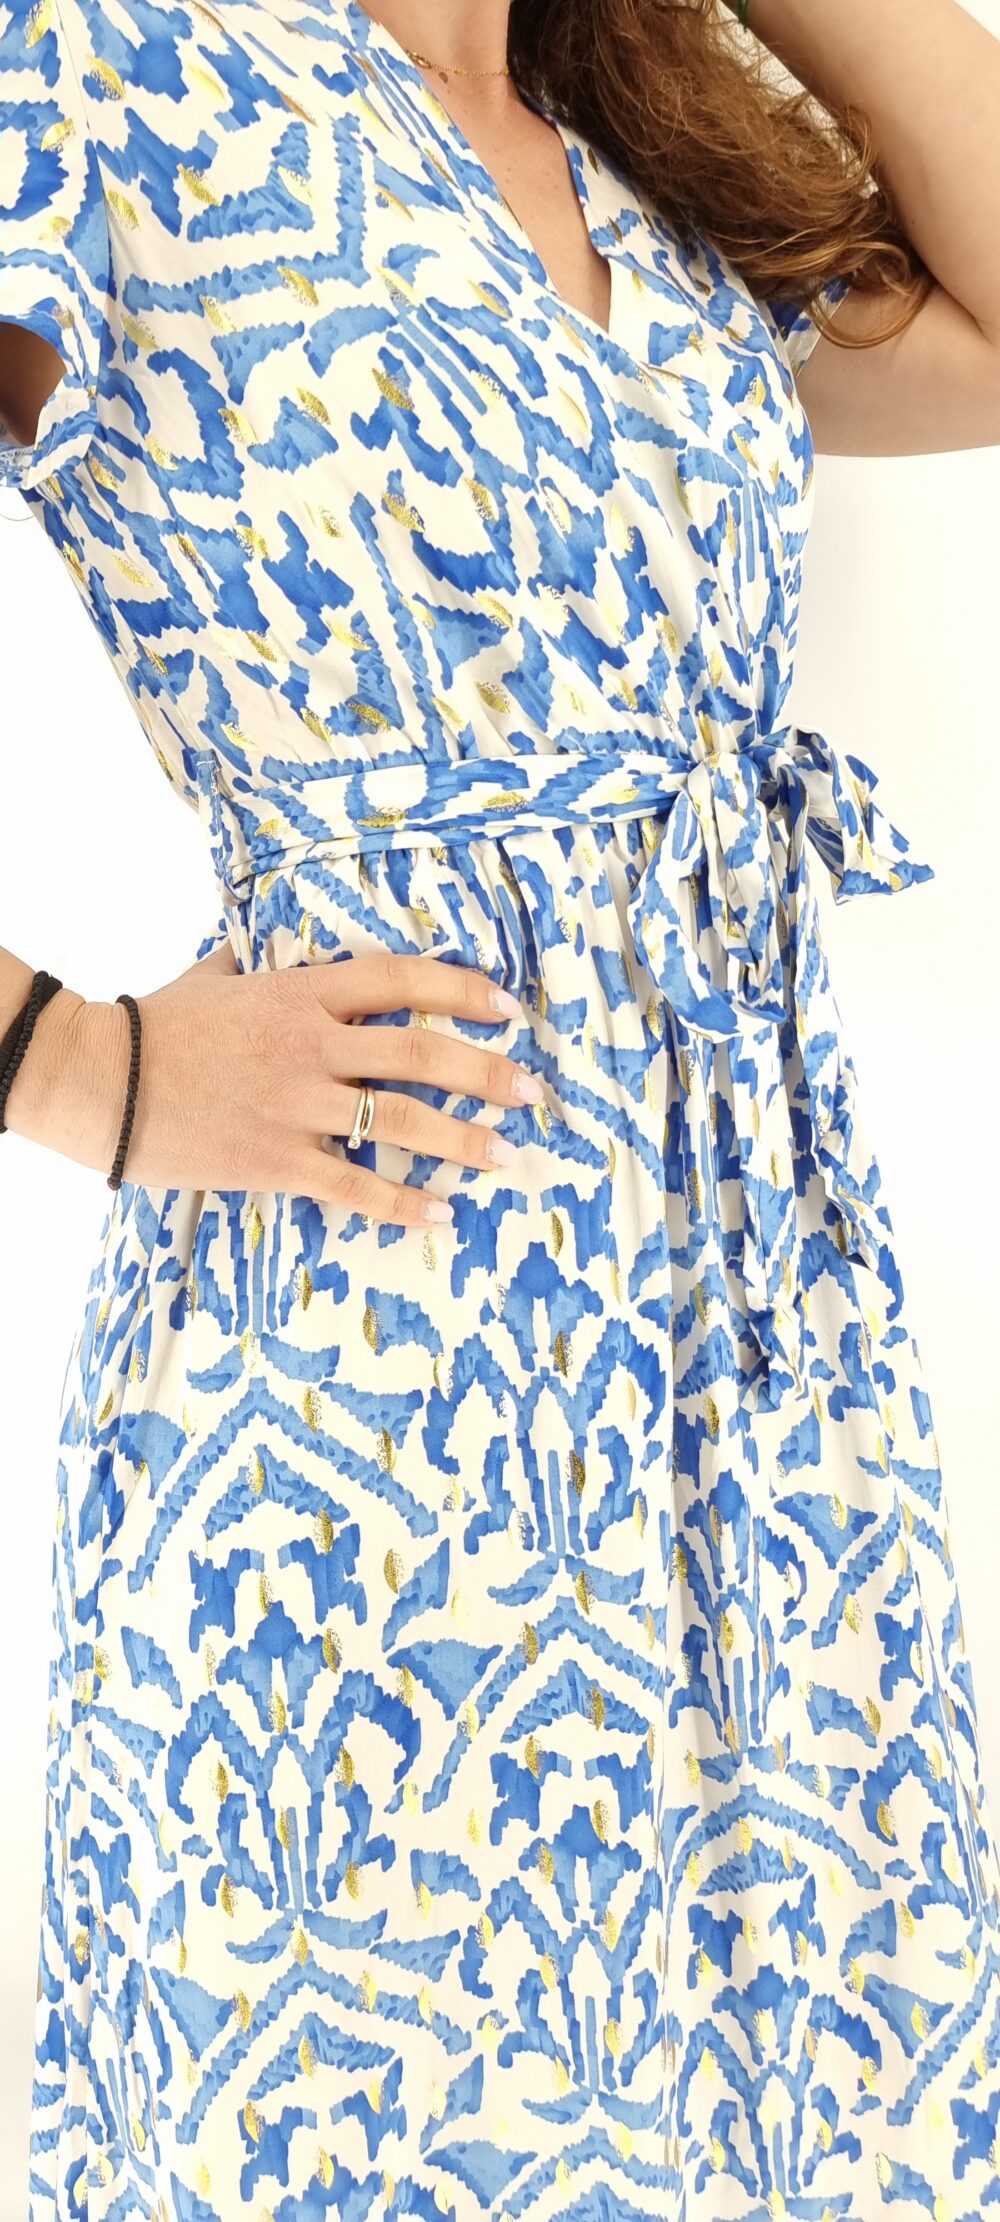 Φόρεμα μακρύ κρουαζέ με ίδια ζώνη και σχέδια μπλε